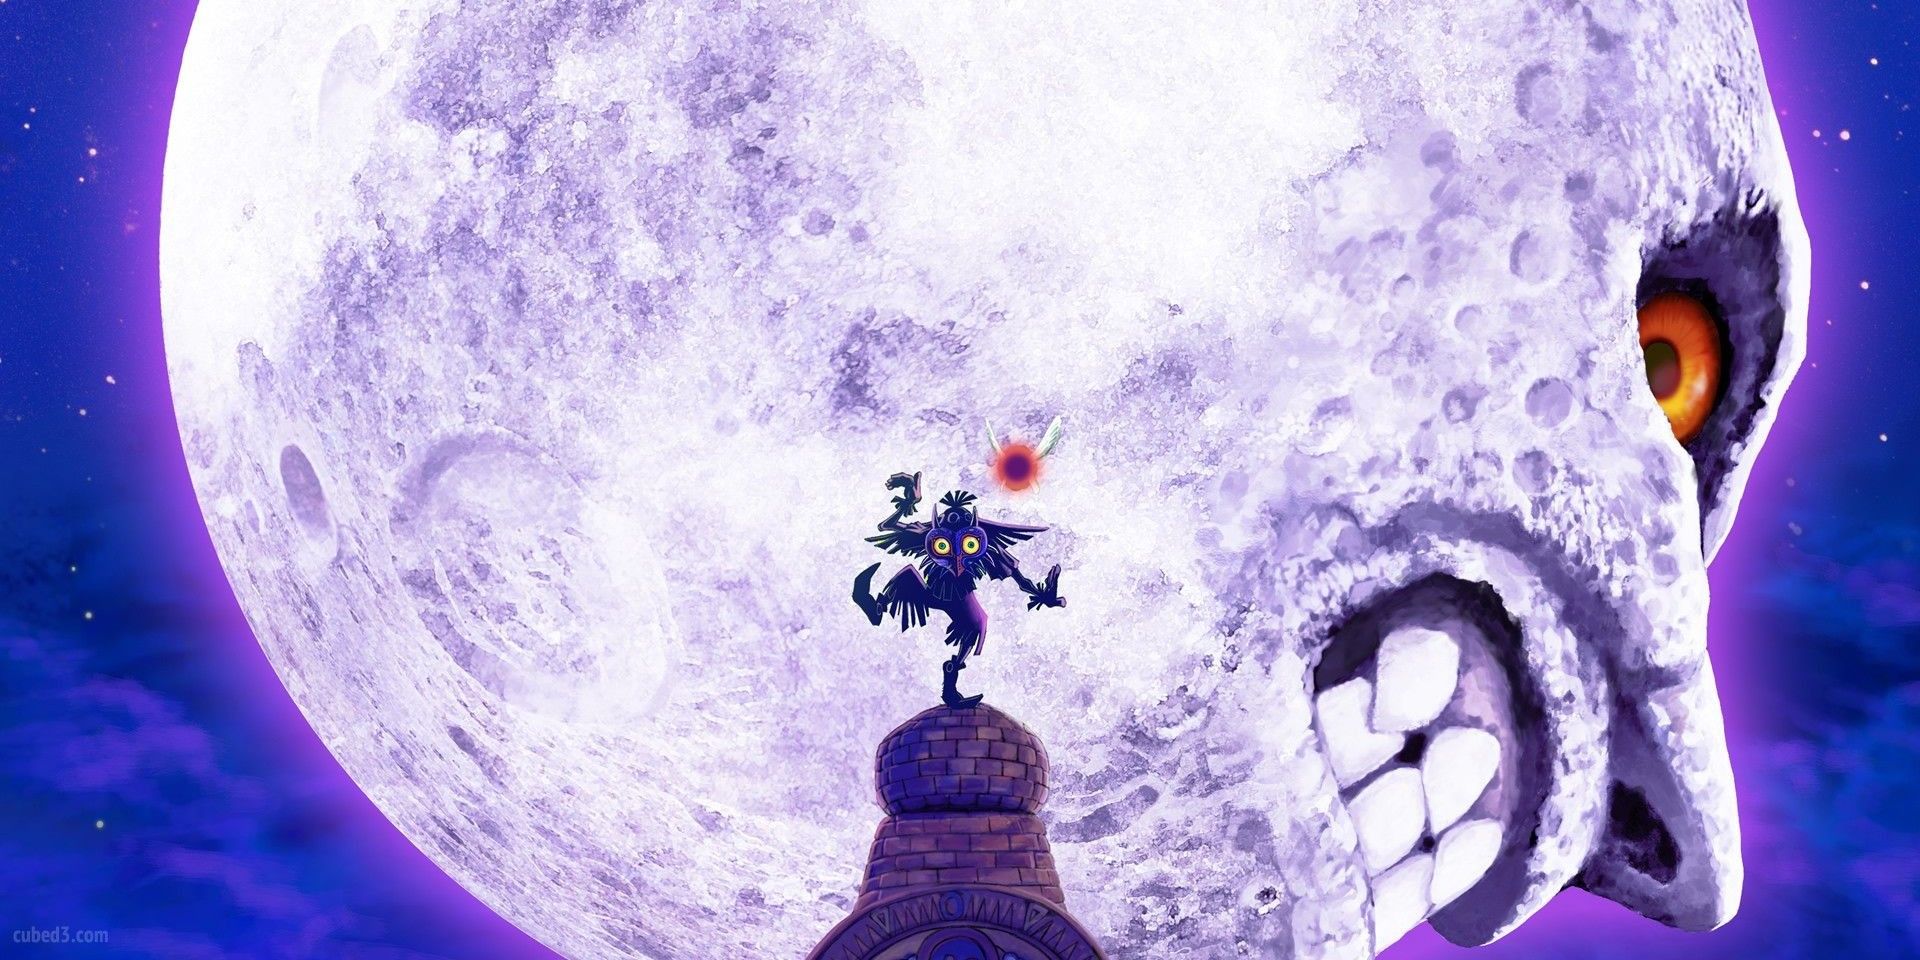 Skull Kid dances in front of the moon in The Legend of Zelda: Majora's Mask.